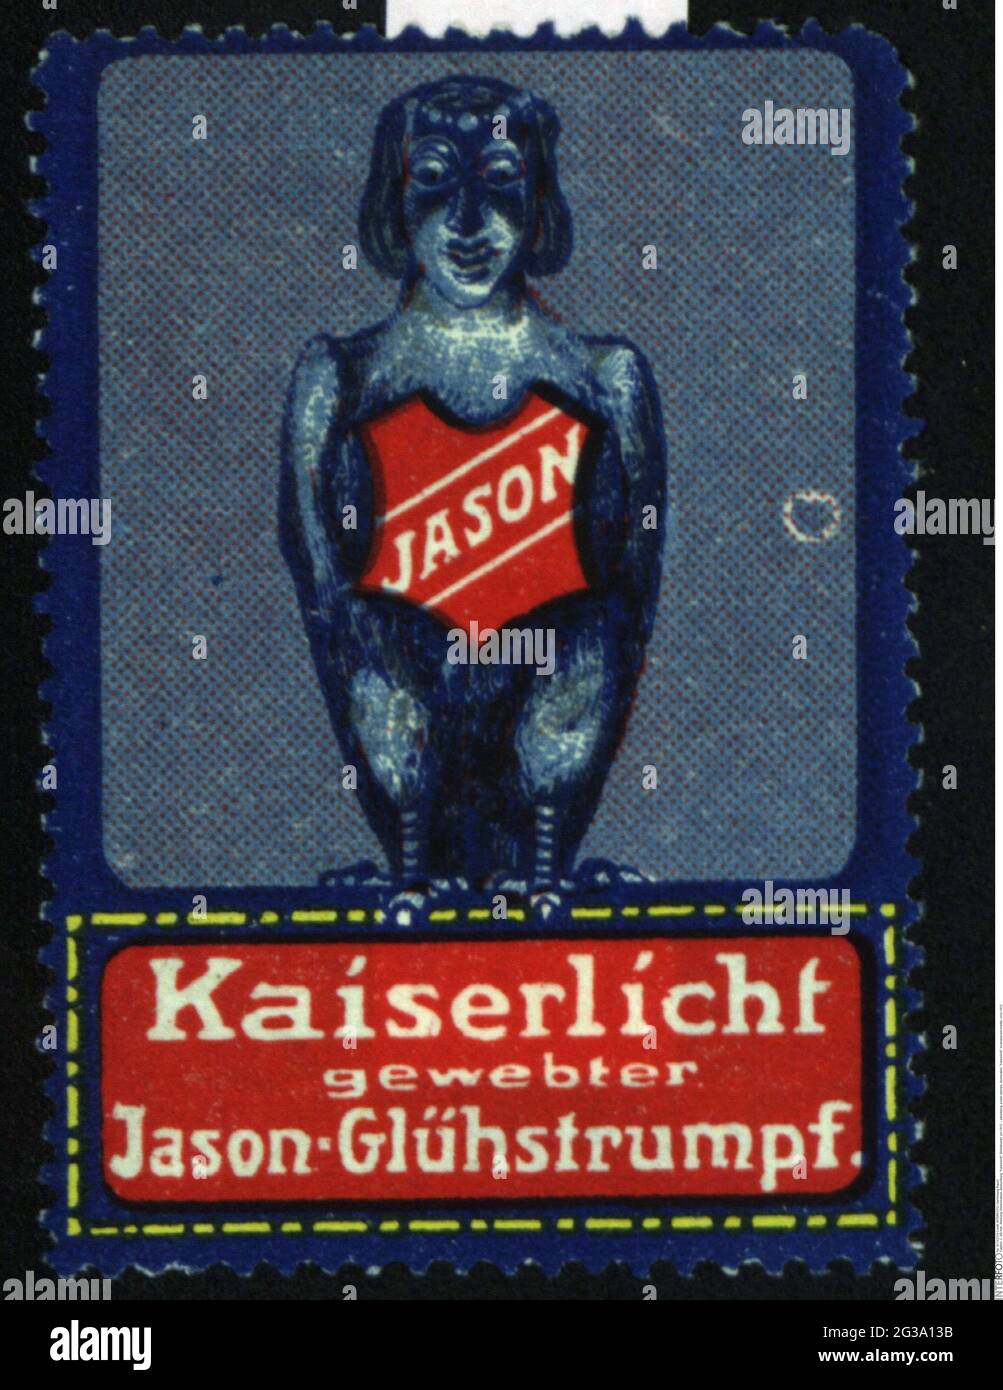 Werbung, Plakatstempel, Beleuchtung, Kaiserlicht, Glühmantel, CIRCA 1910, ZUSÄTZLICHE-RIGHTS-CLEARANCE-INFO-NOT-AVAILABLE Stockfoto